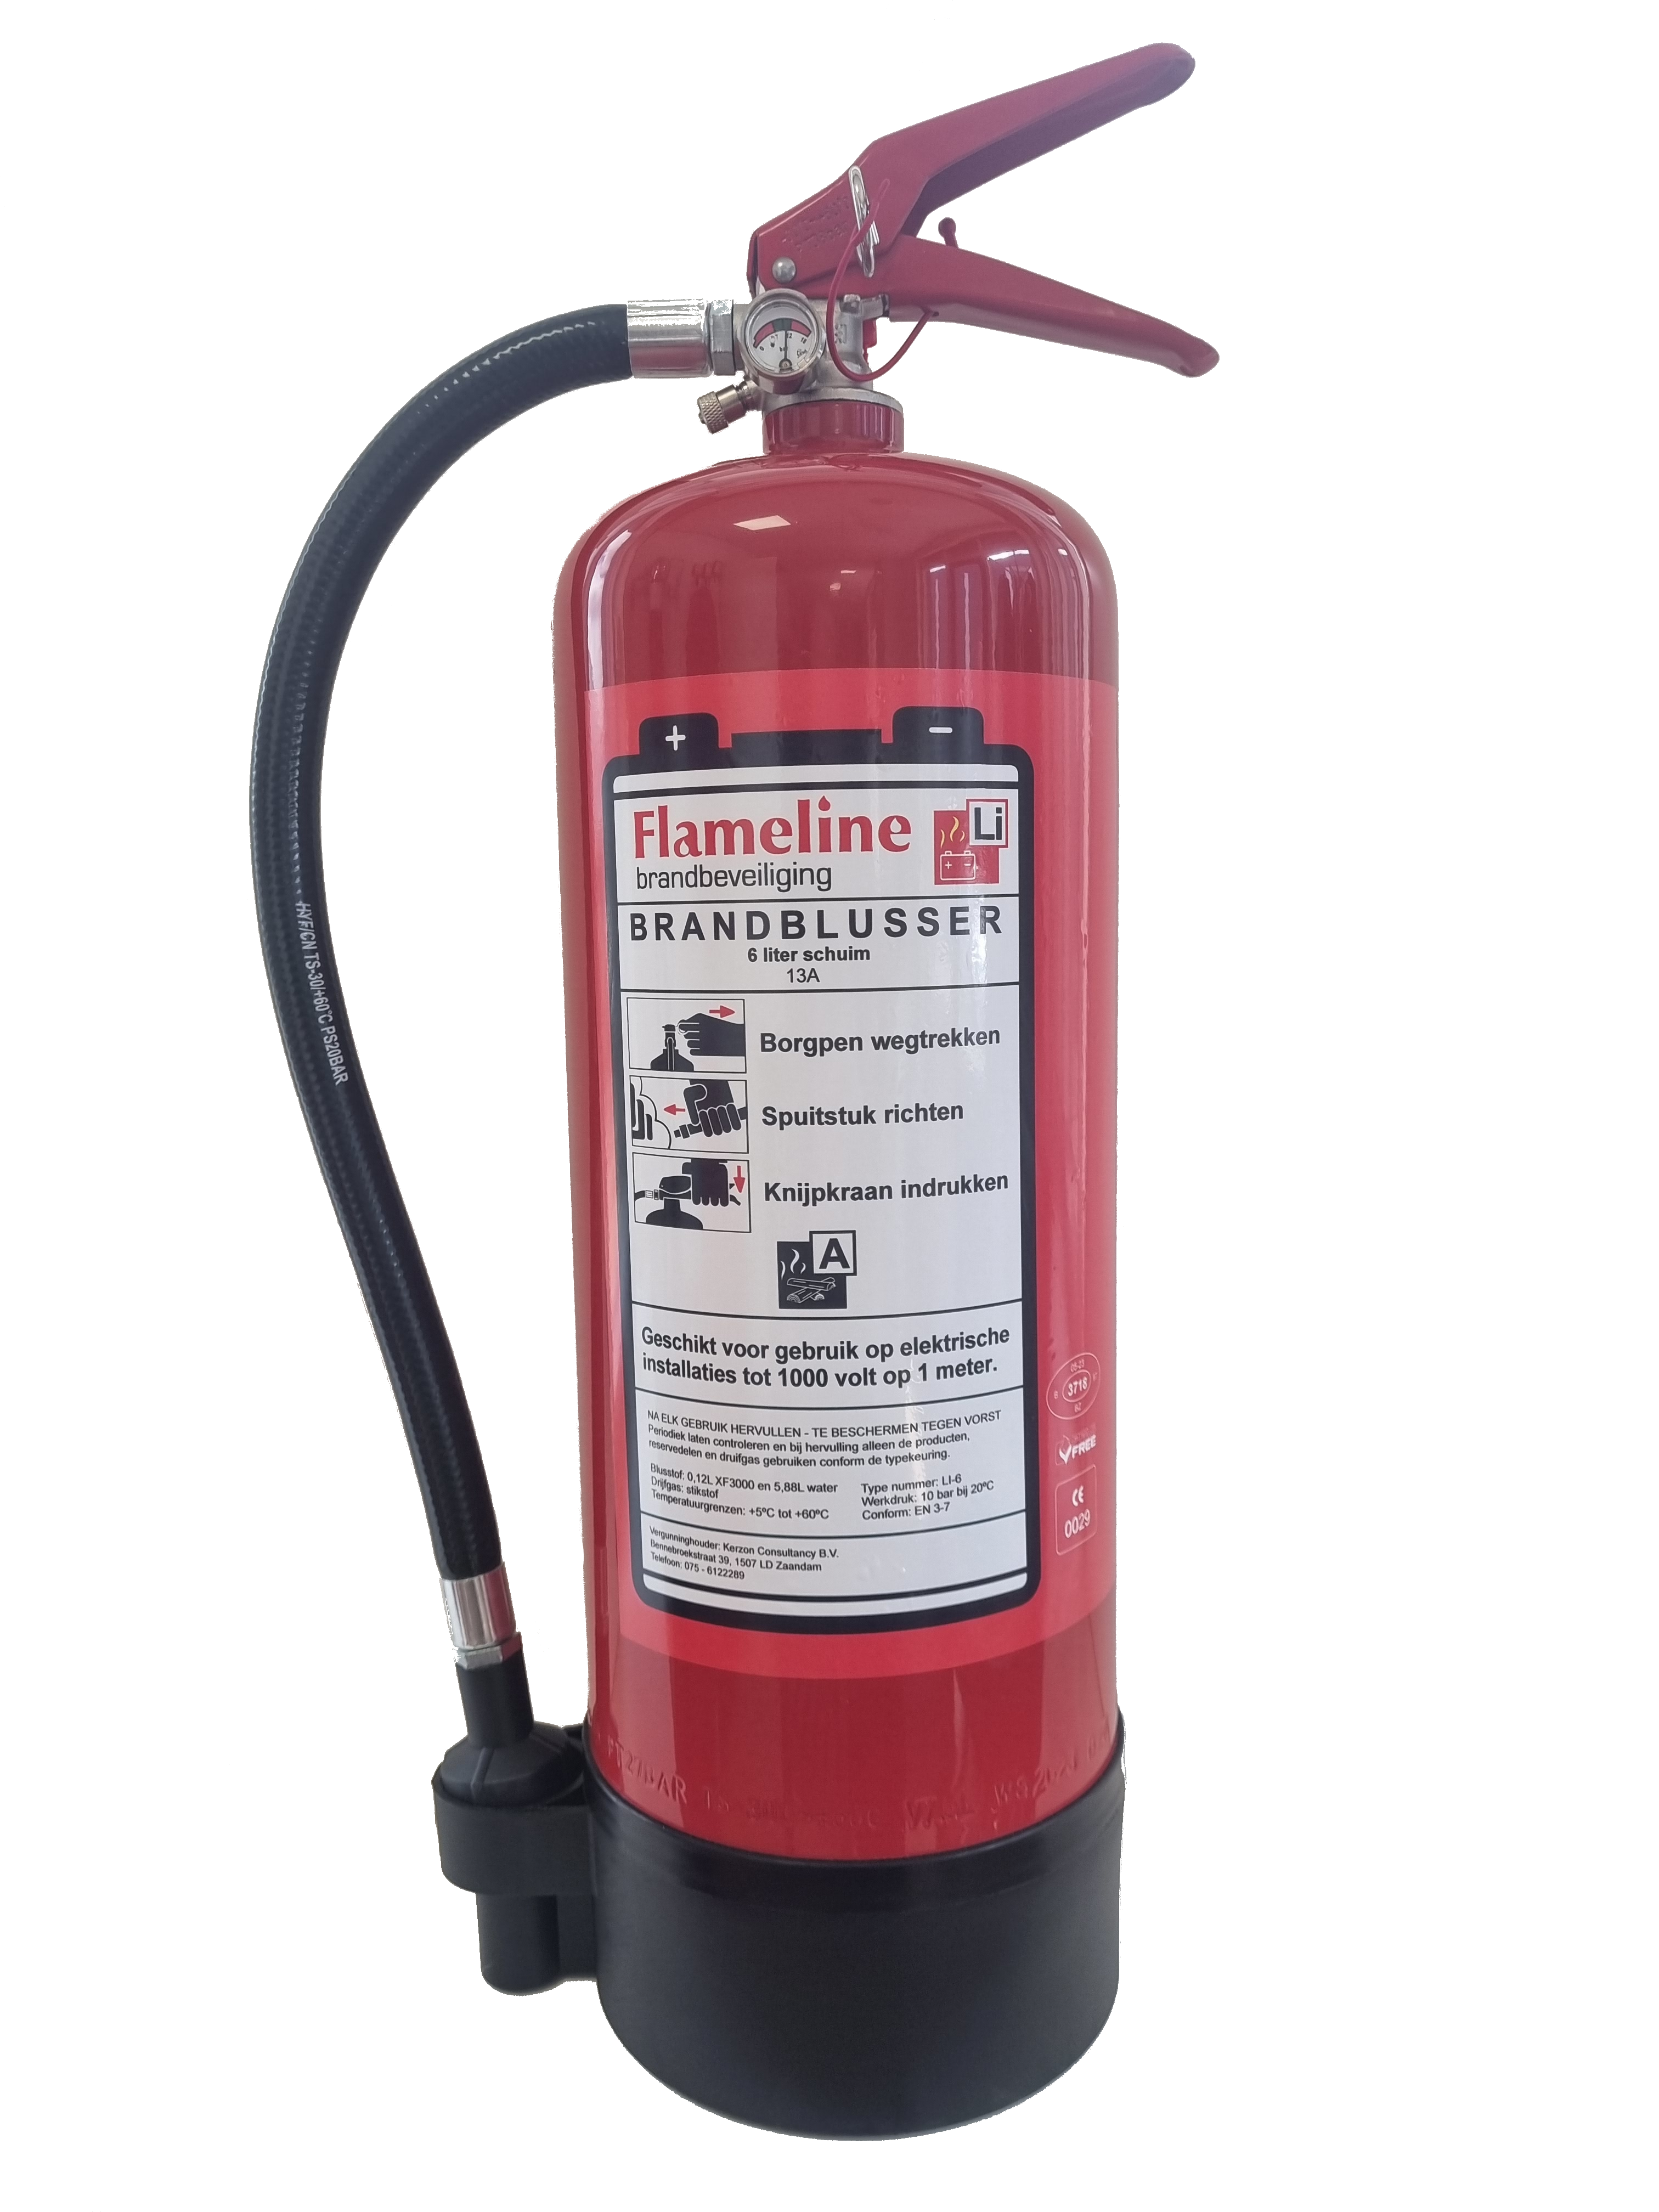 Flameline Li6 Lithium 6 liter Schuimblustoestel 13A – Voor Lithium branden